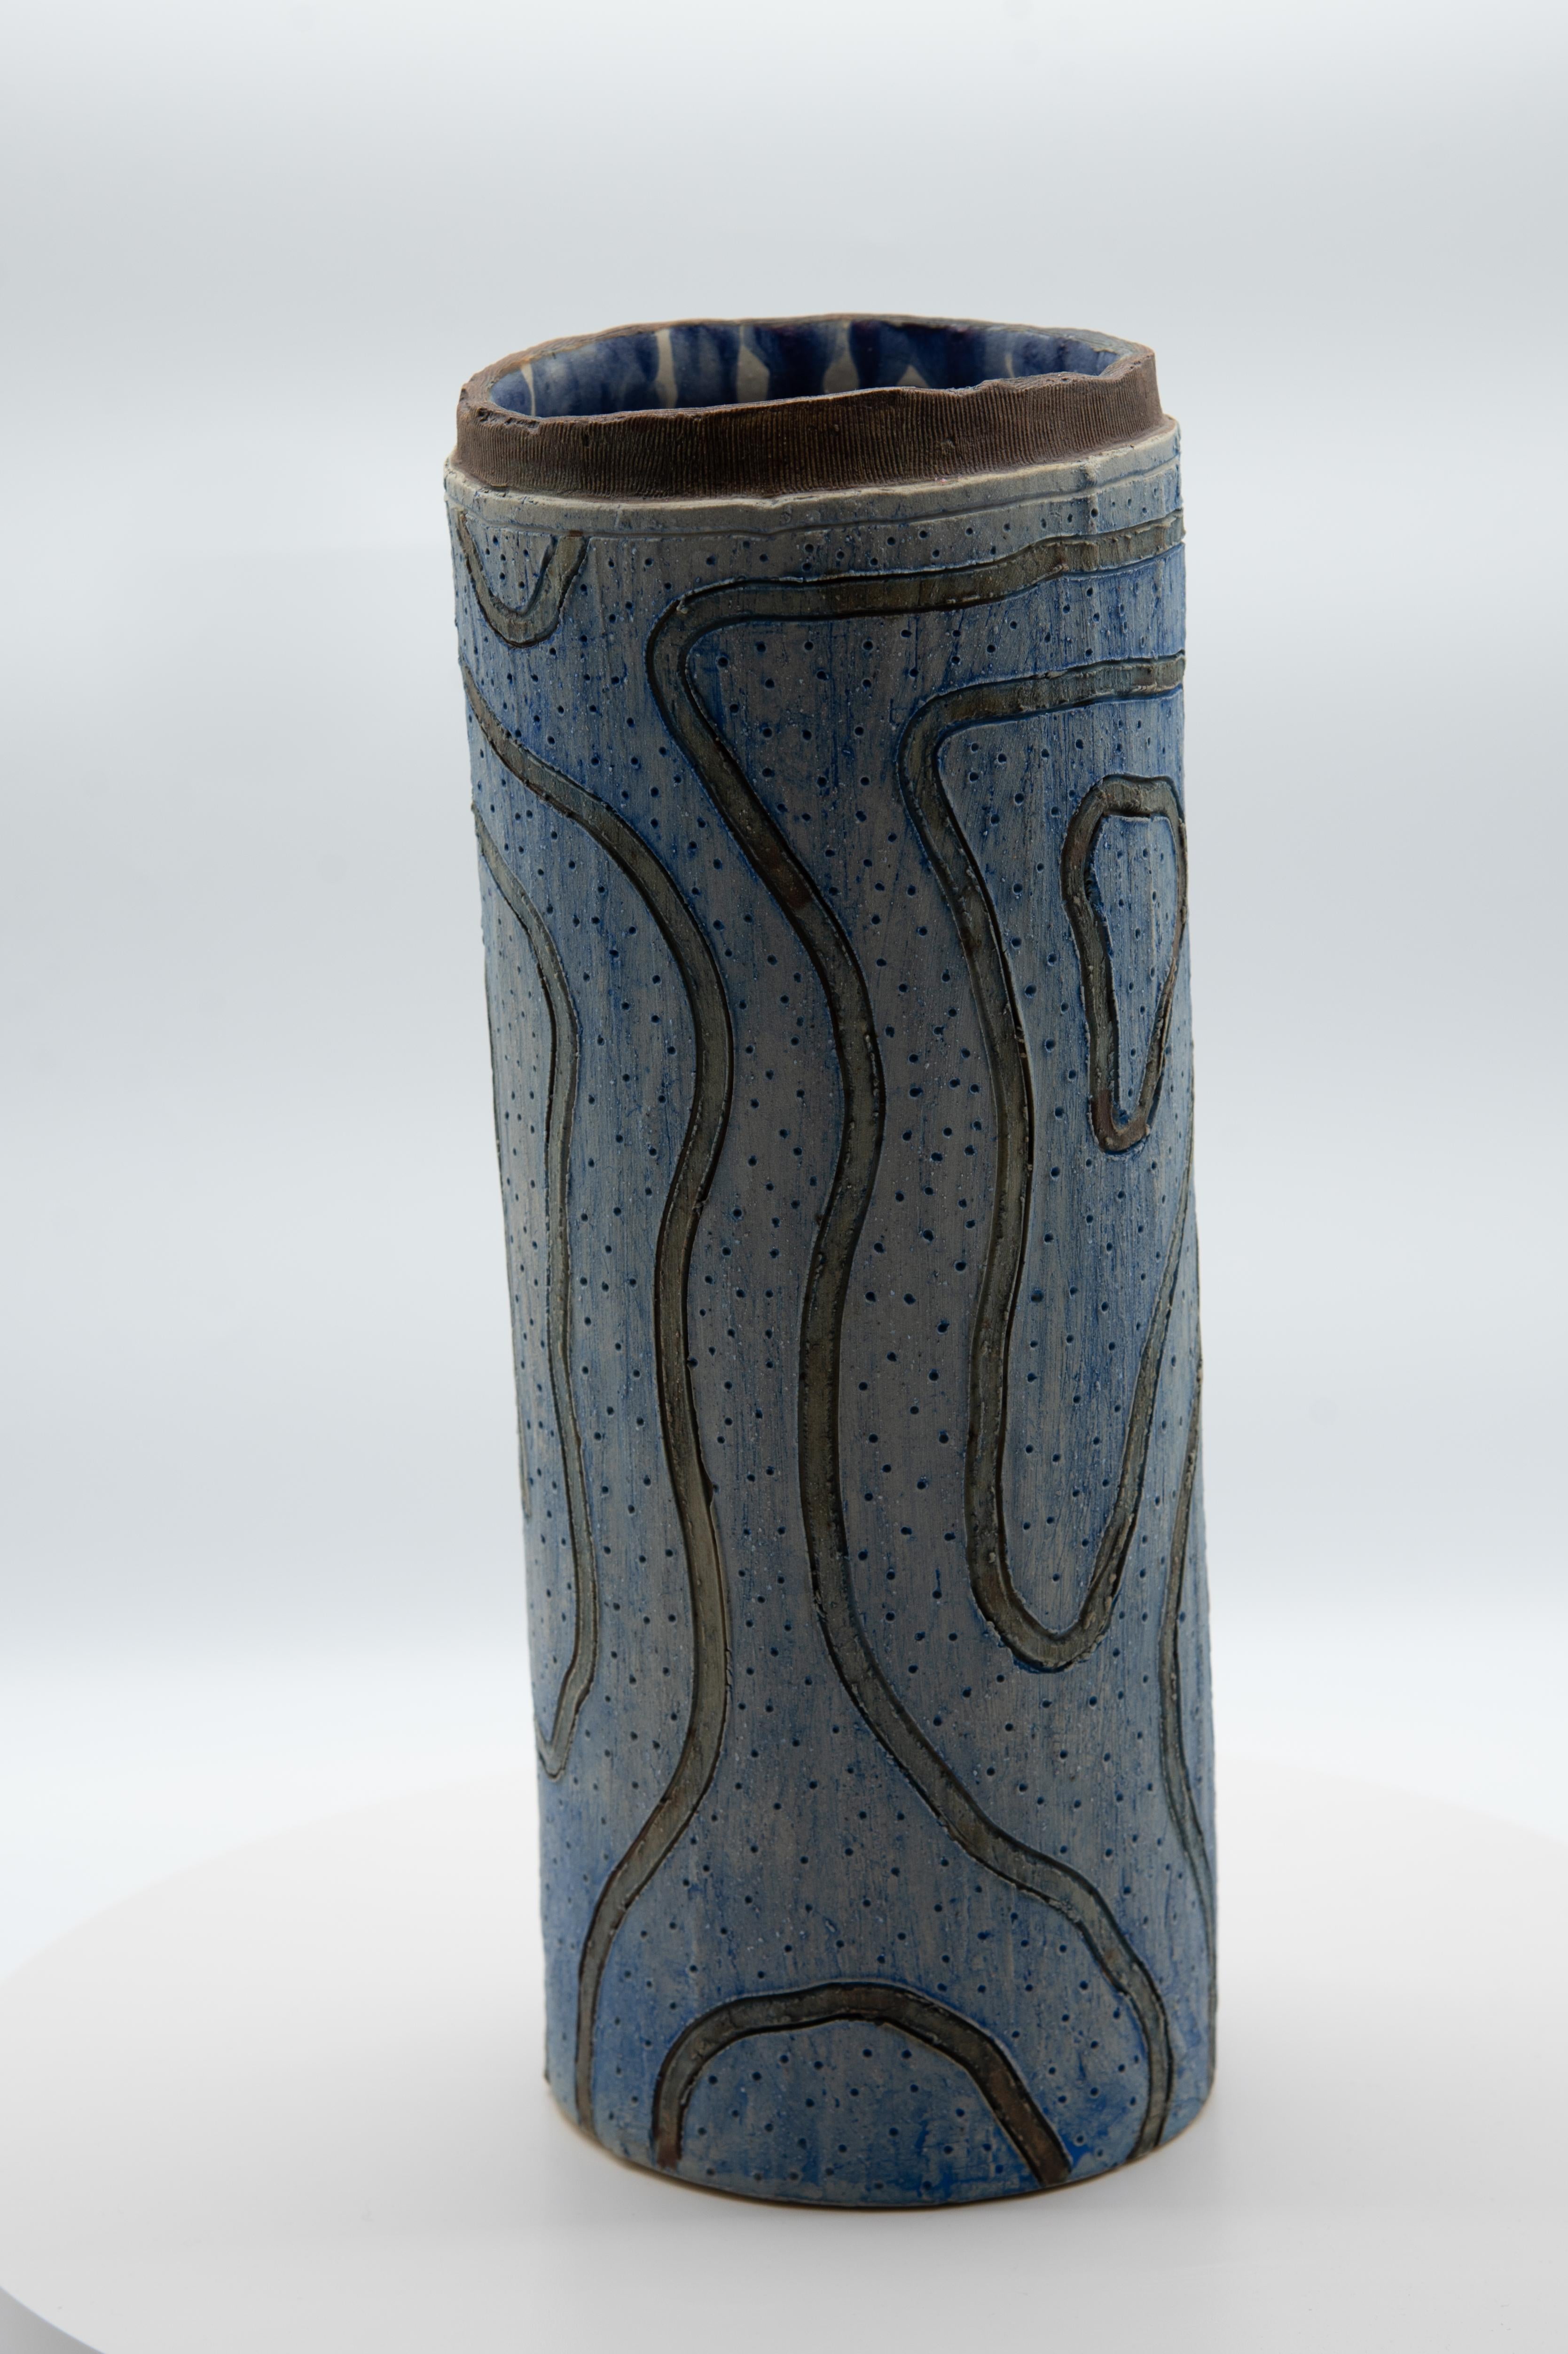 Schöne organische moderne Vase mit blauen Oxiden und Erden bemalt. Linien-Sgraffito-Technik. 

Über den Künstler: 
Die Tradition zu nutzen, um sich weiterzuentwickeln, zu transformieren und zu erneuern - all das ist Teil der Arbeit von Omar